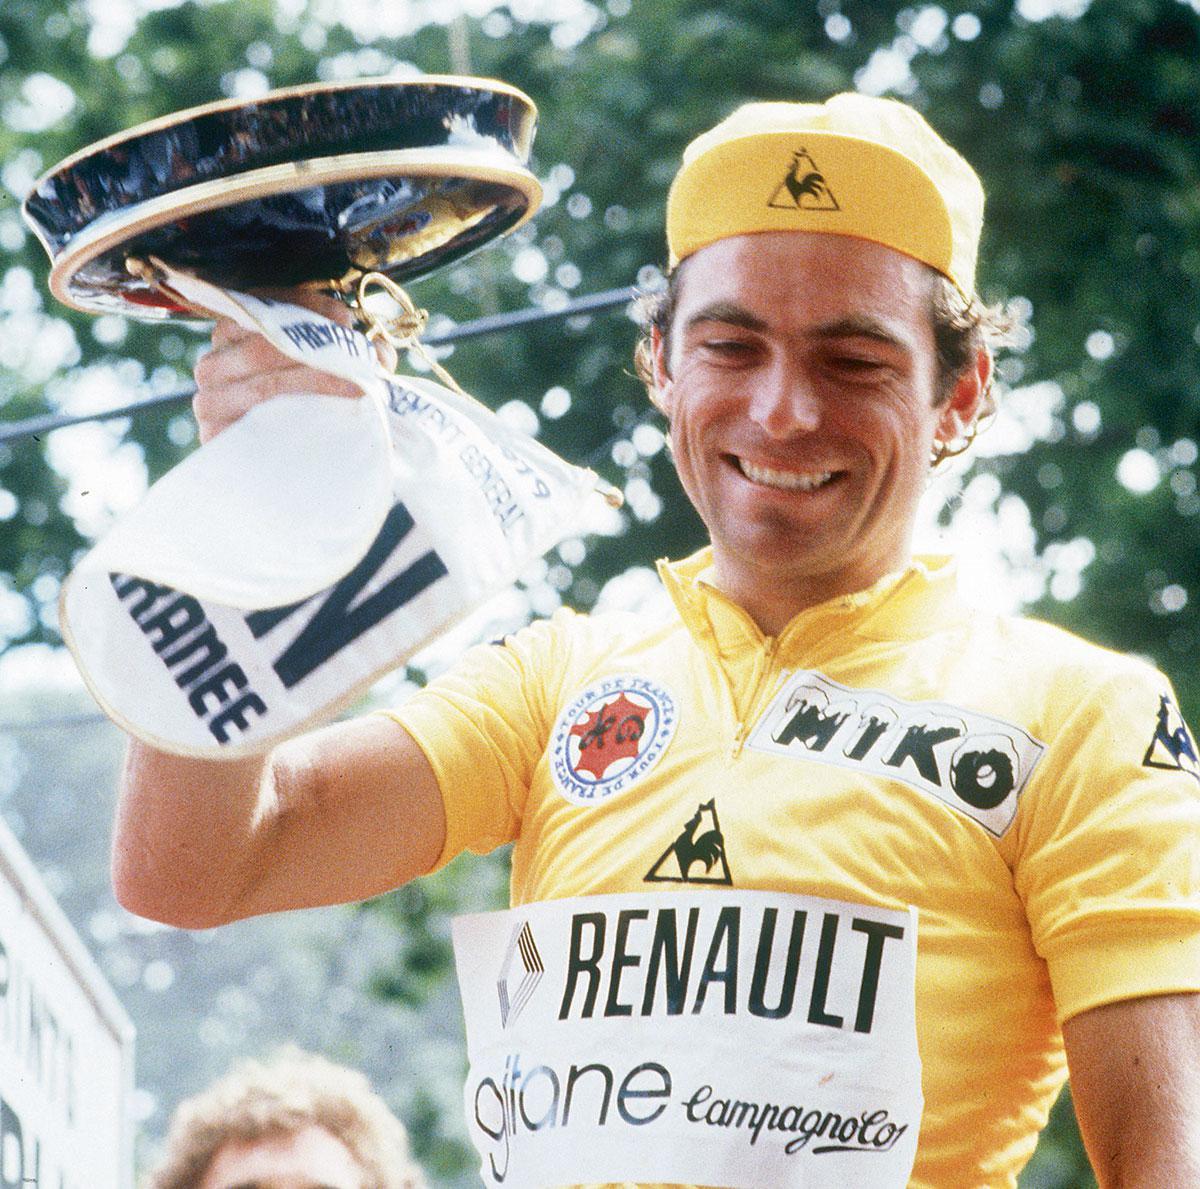 Tourwinnaar Bernard Hinault (1979)